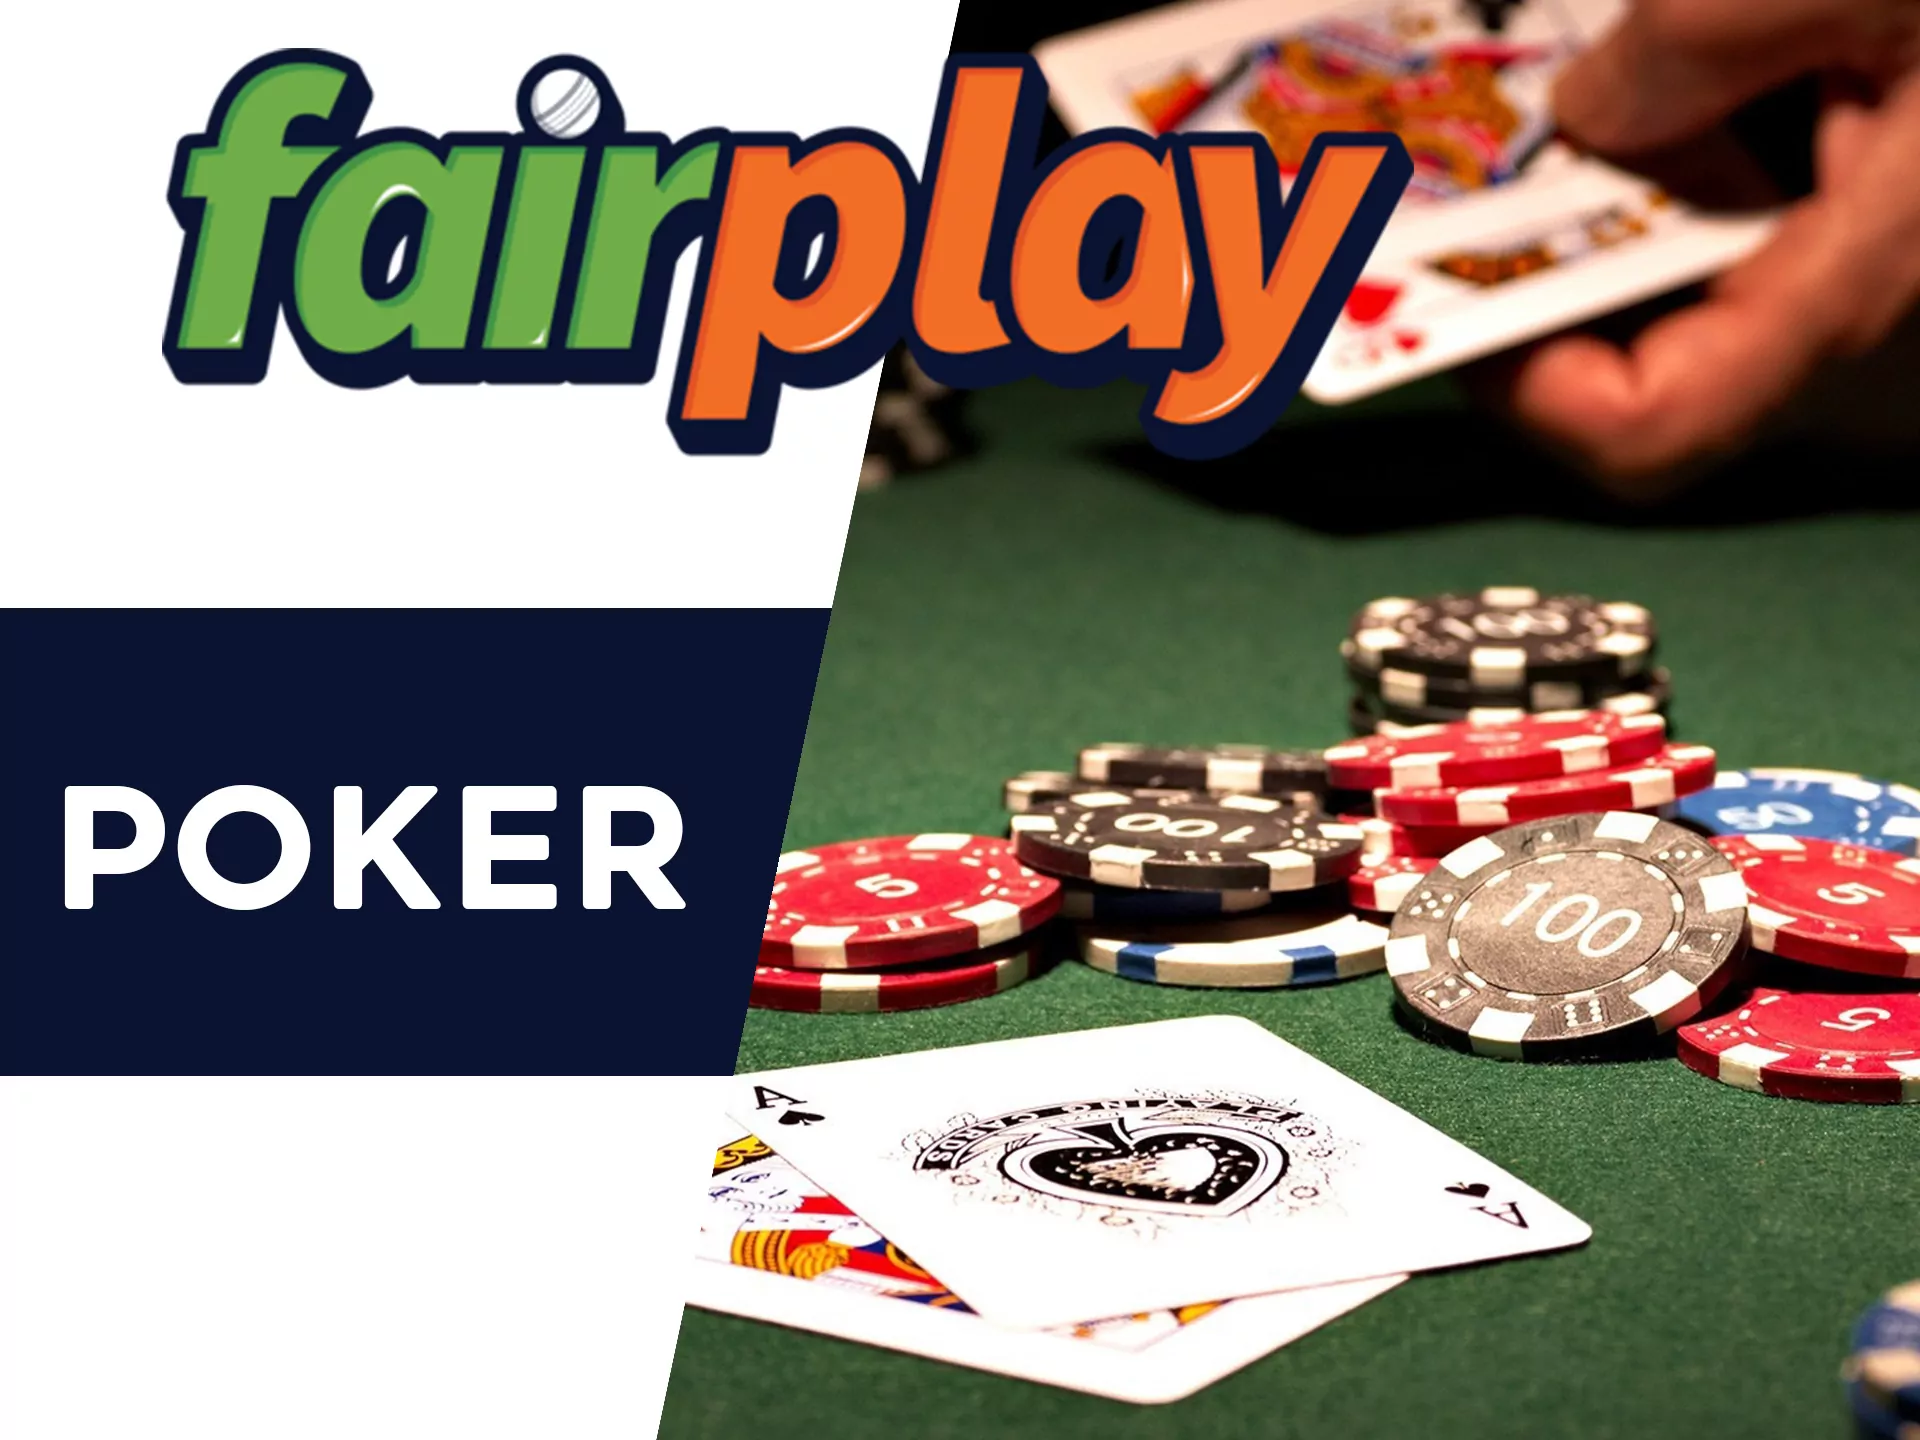 Play poker at Fairplay.